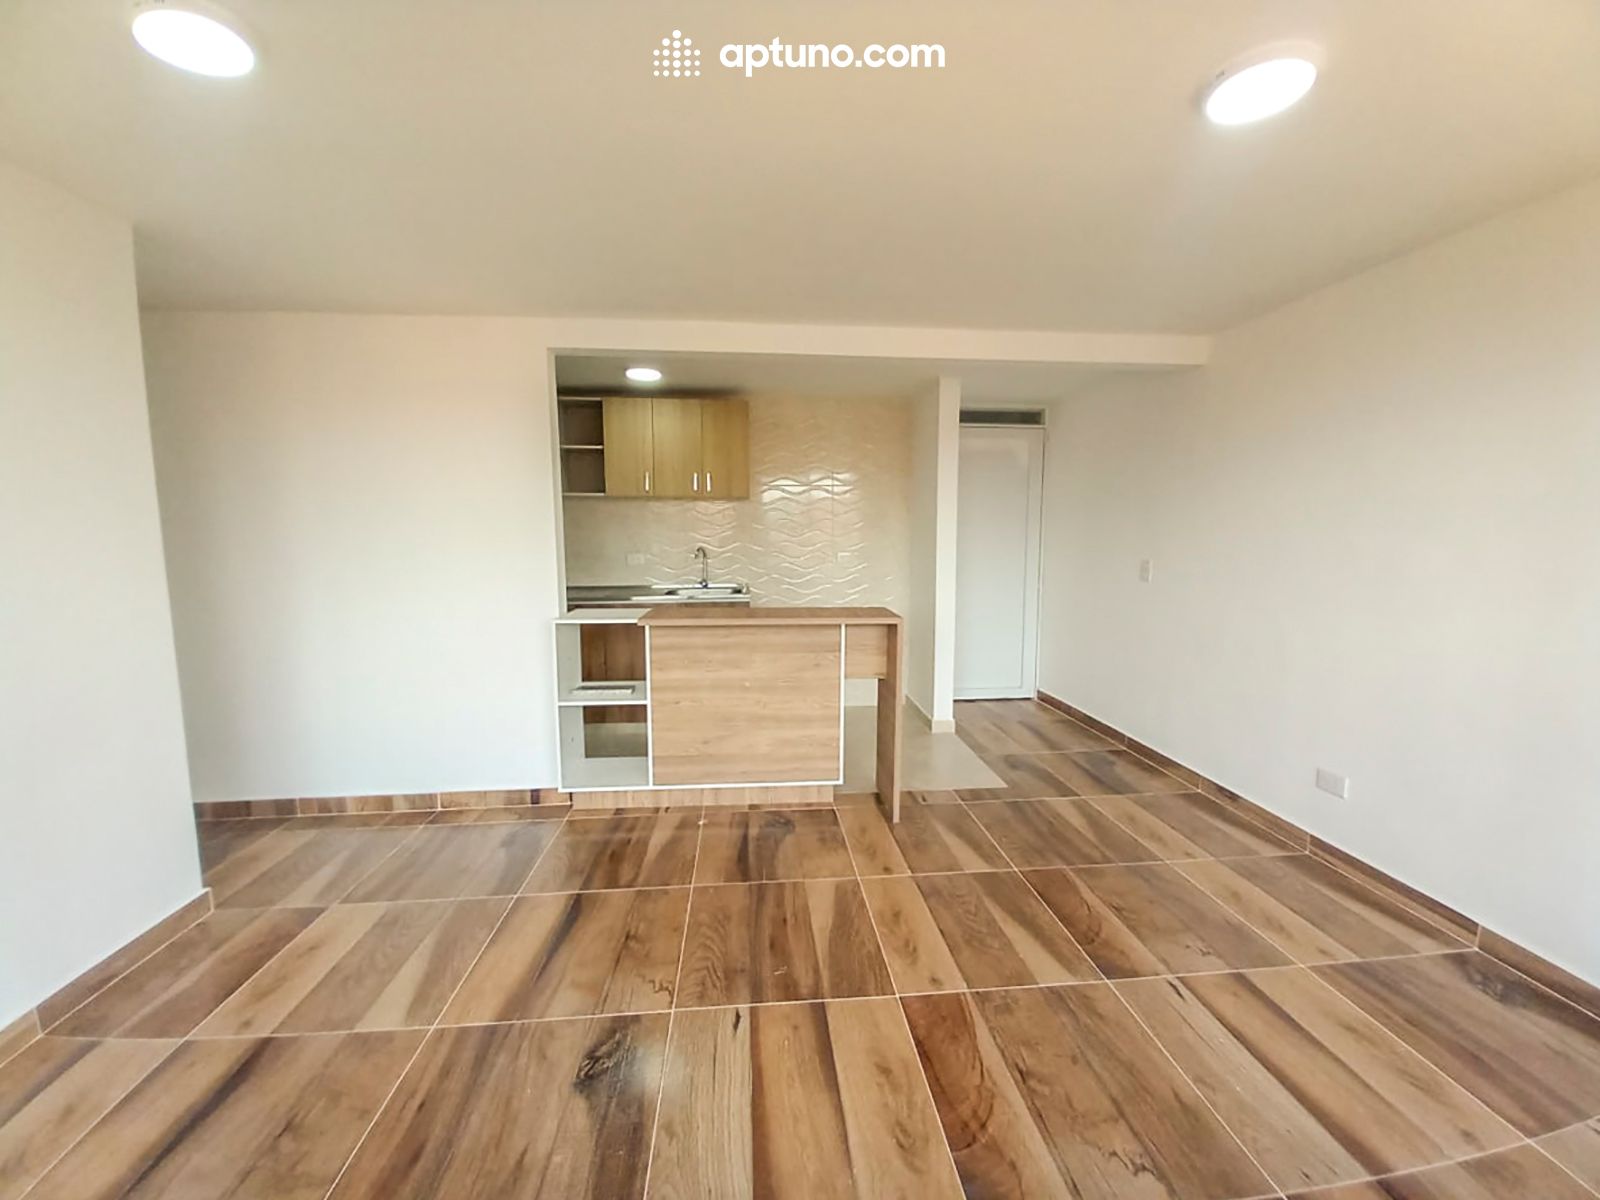 Apartamento en arriendo Madrid 55 m² - $ 850.000,00